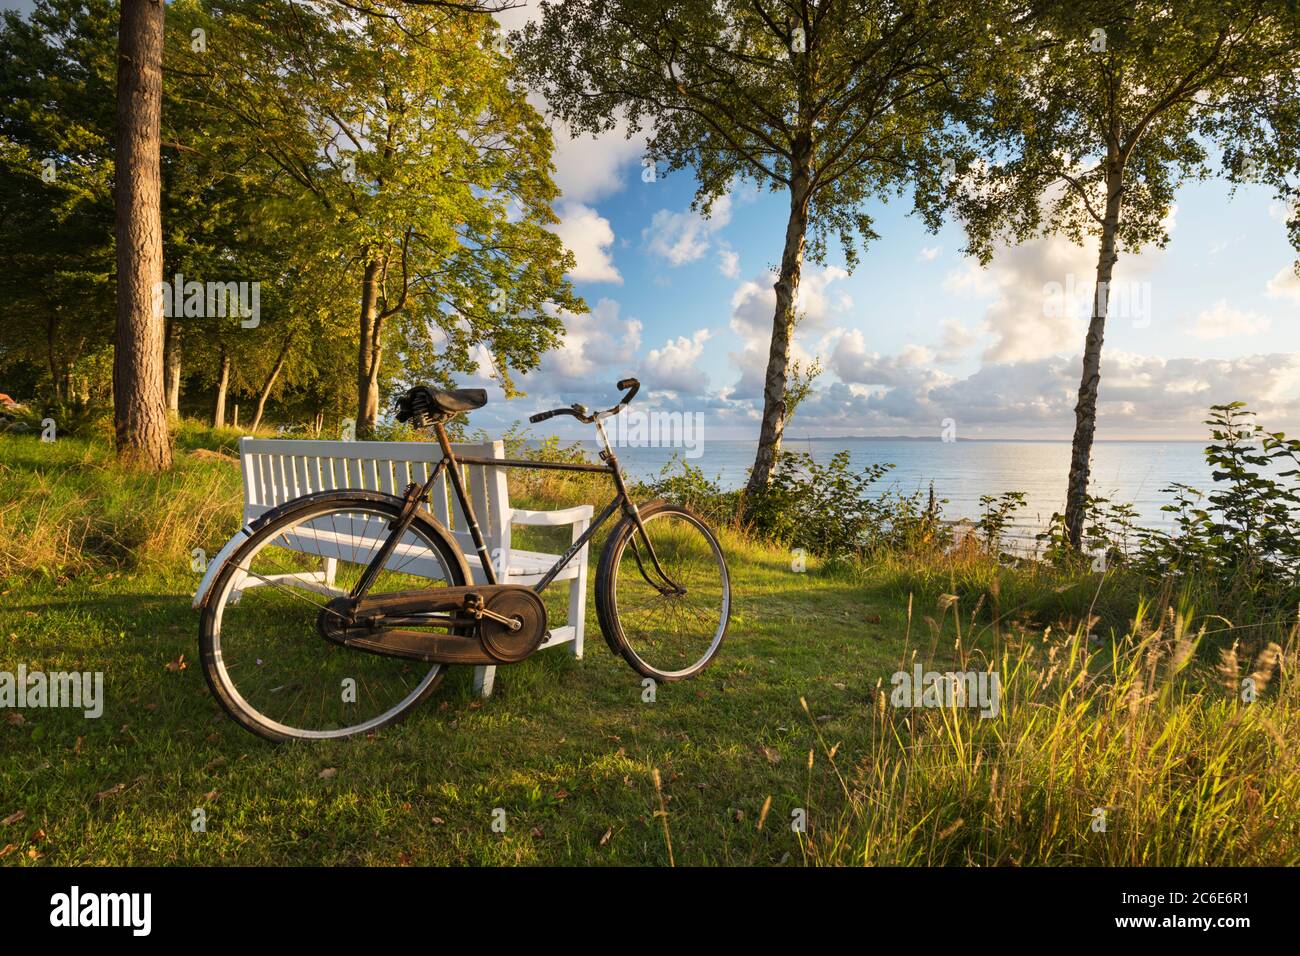 Vecchia bicicletta appoggiata contro il banco di bianco che si affaccia sul mare incorniciato da silver birch e alberi di pino, Munkerup, Kattegat Costa, Zelanda, Danimarca, Europa Foto Stock